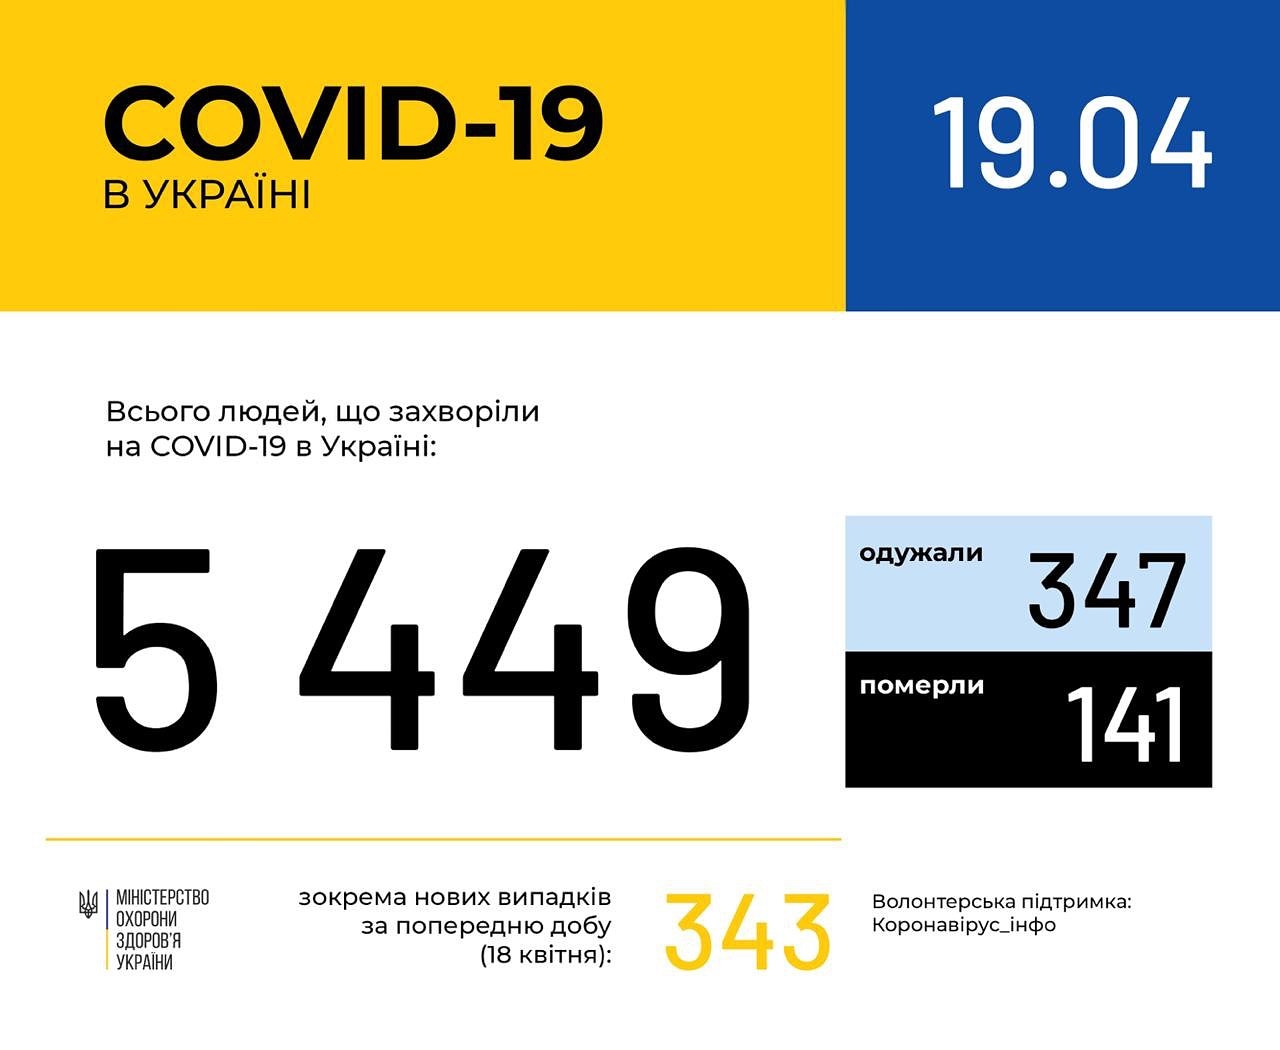 В Україні зафіксовано 5449 випадків коронавірусної хвороби COVID-19, - МОЗ